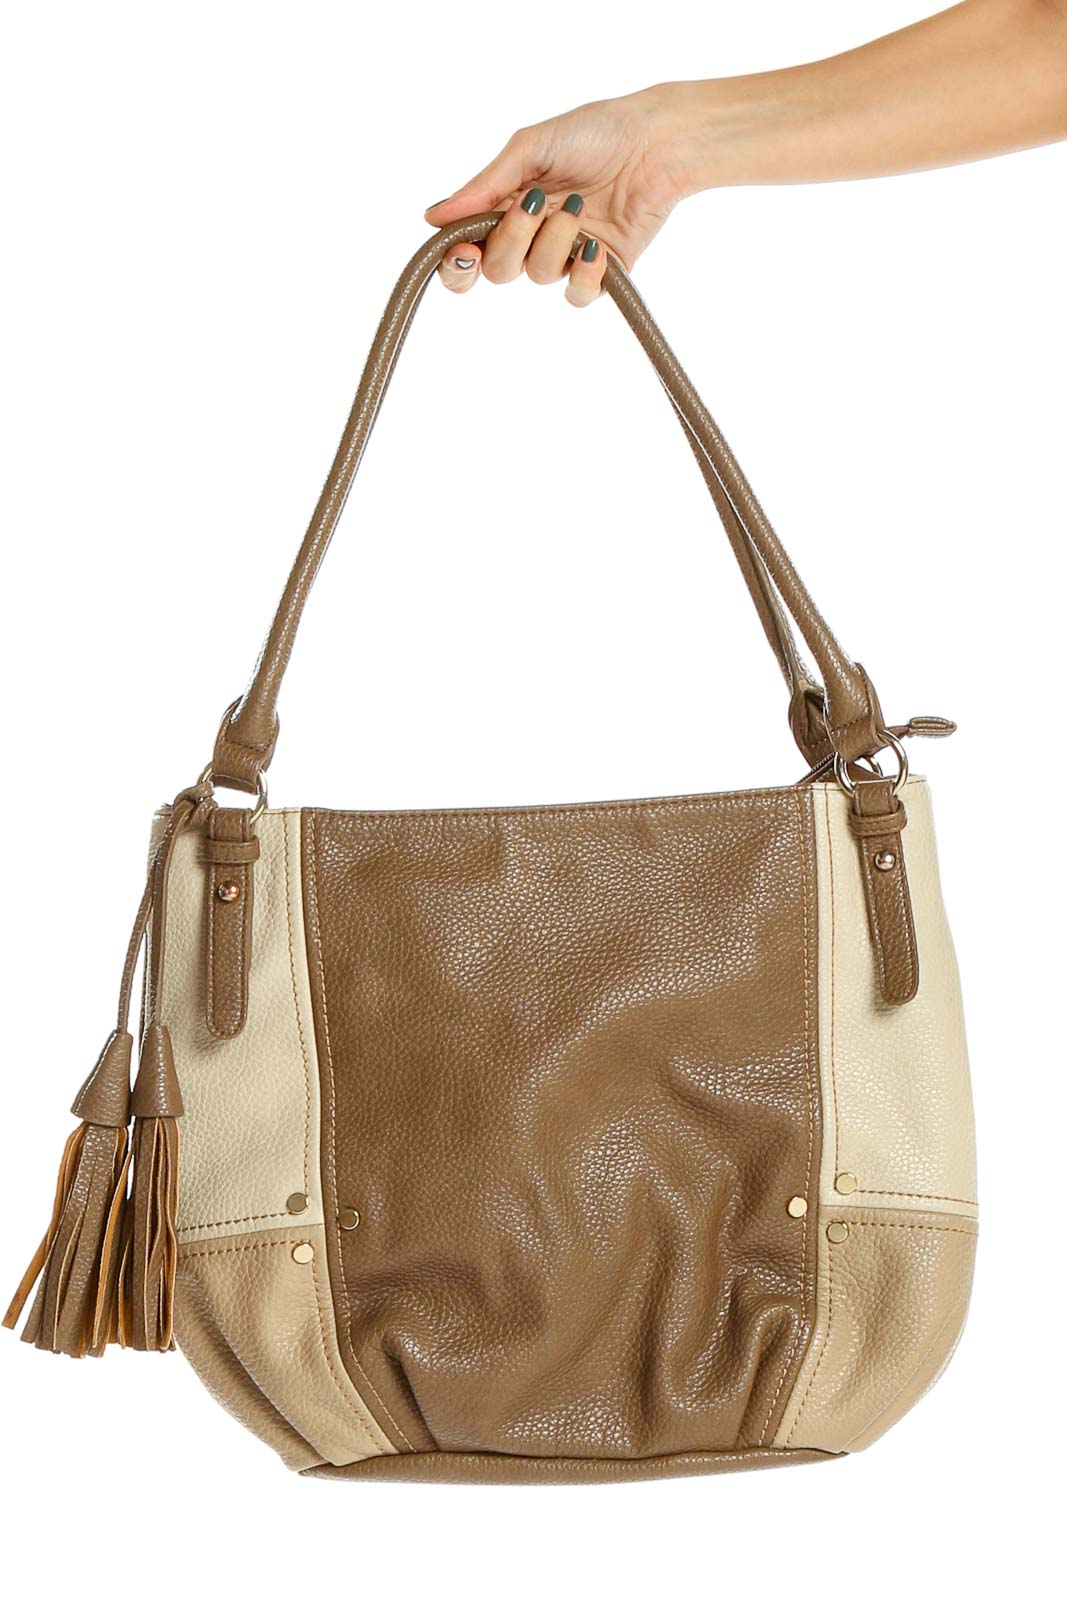 Brown Tan Colorblock Tote Bag Front